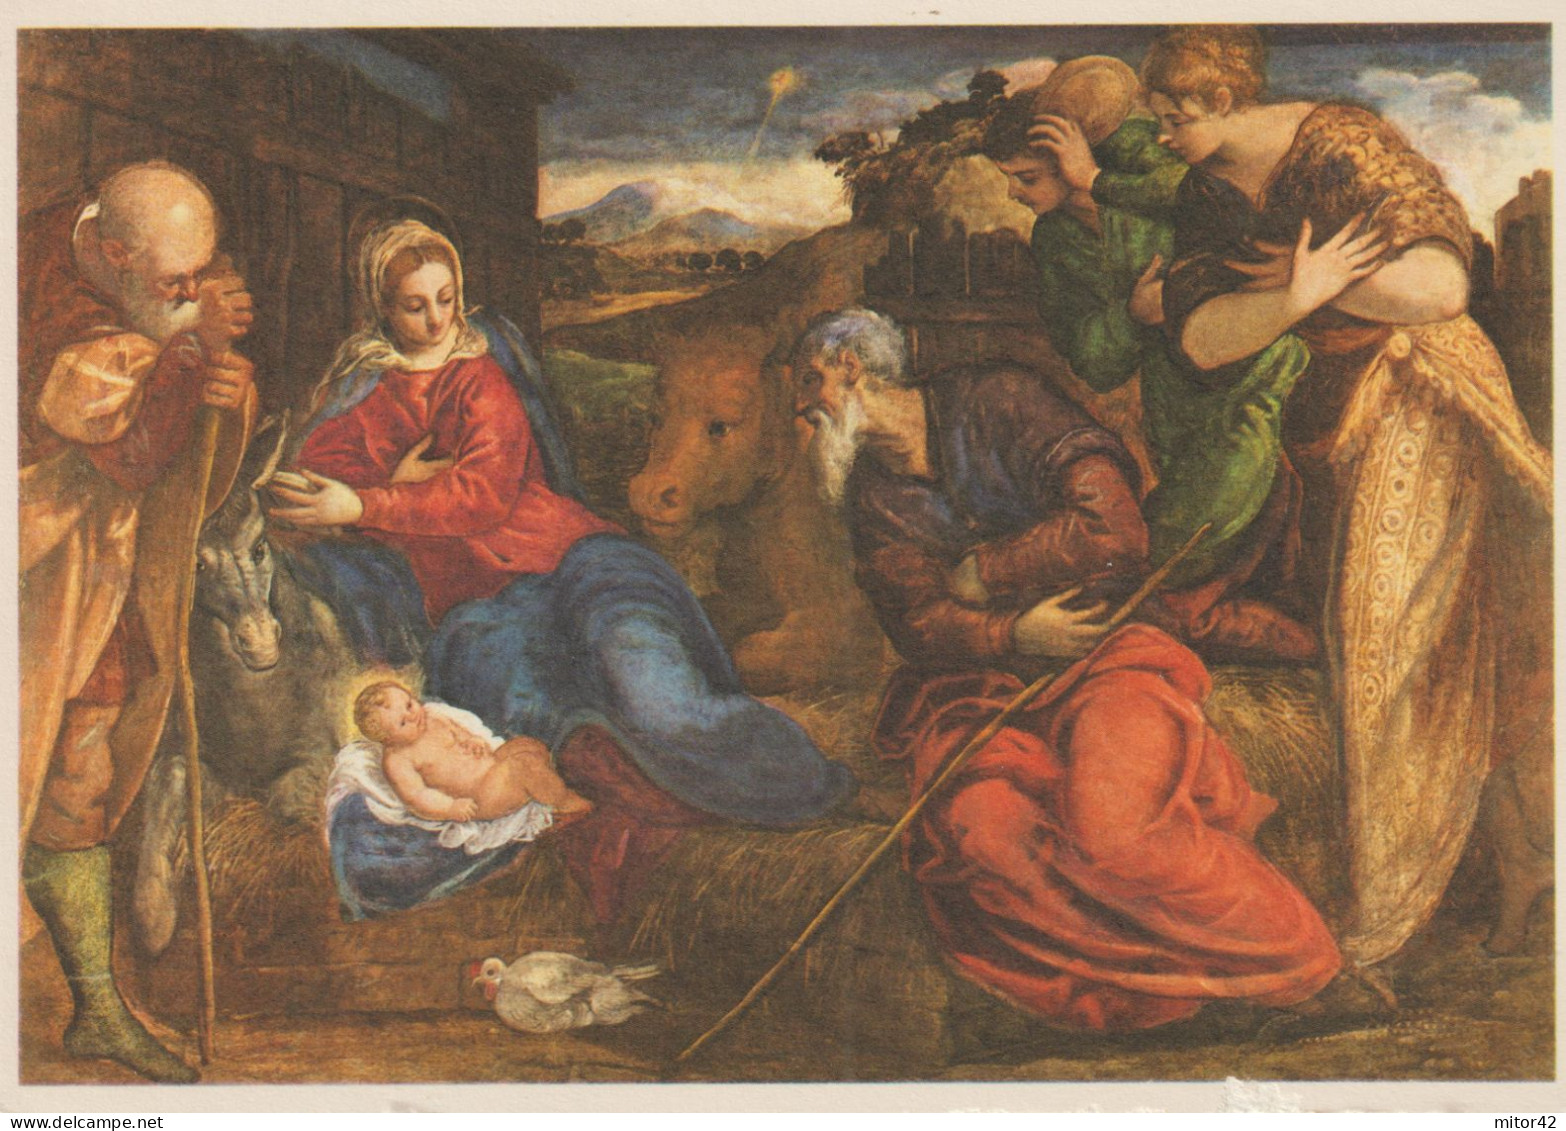 184-Religione-Cristianesimo-Presepe-La Natività-Tintoretto-Verona-Museo Di Castelvecchio - Jesus